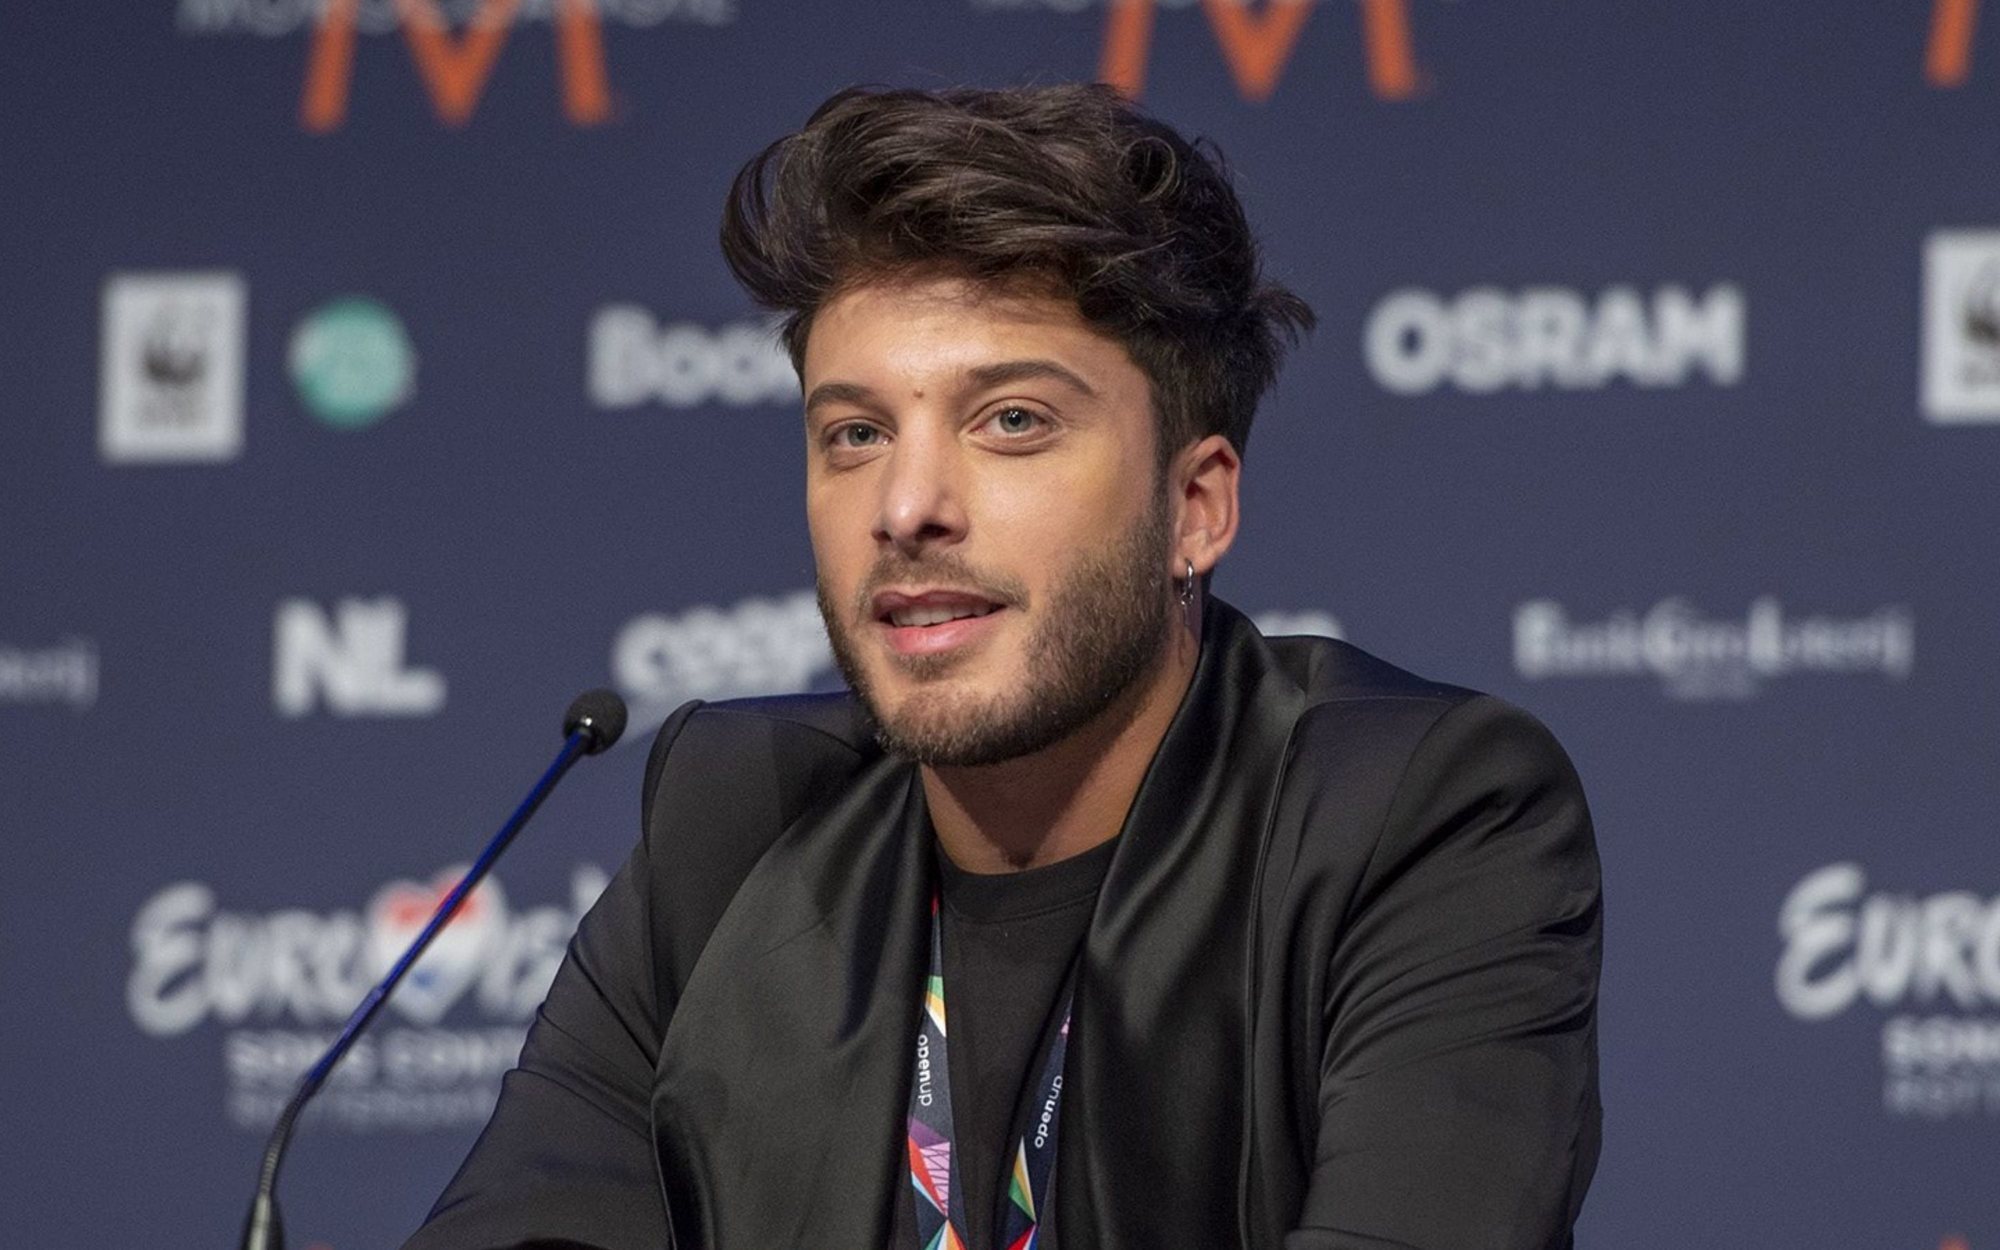 Hackean el Twitter de Blas Cantó antes de representar a España en Eurovisión 2021